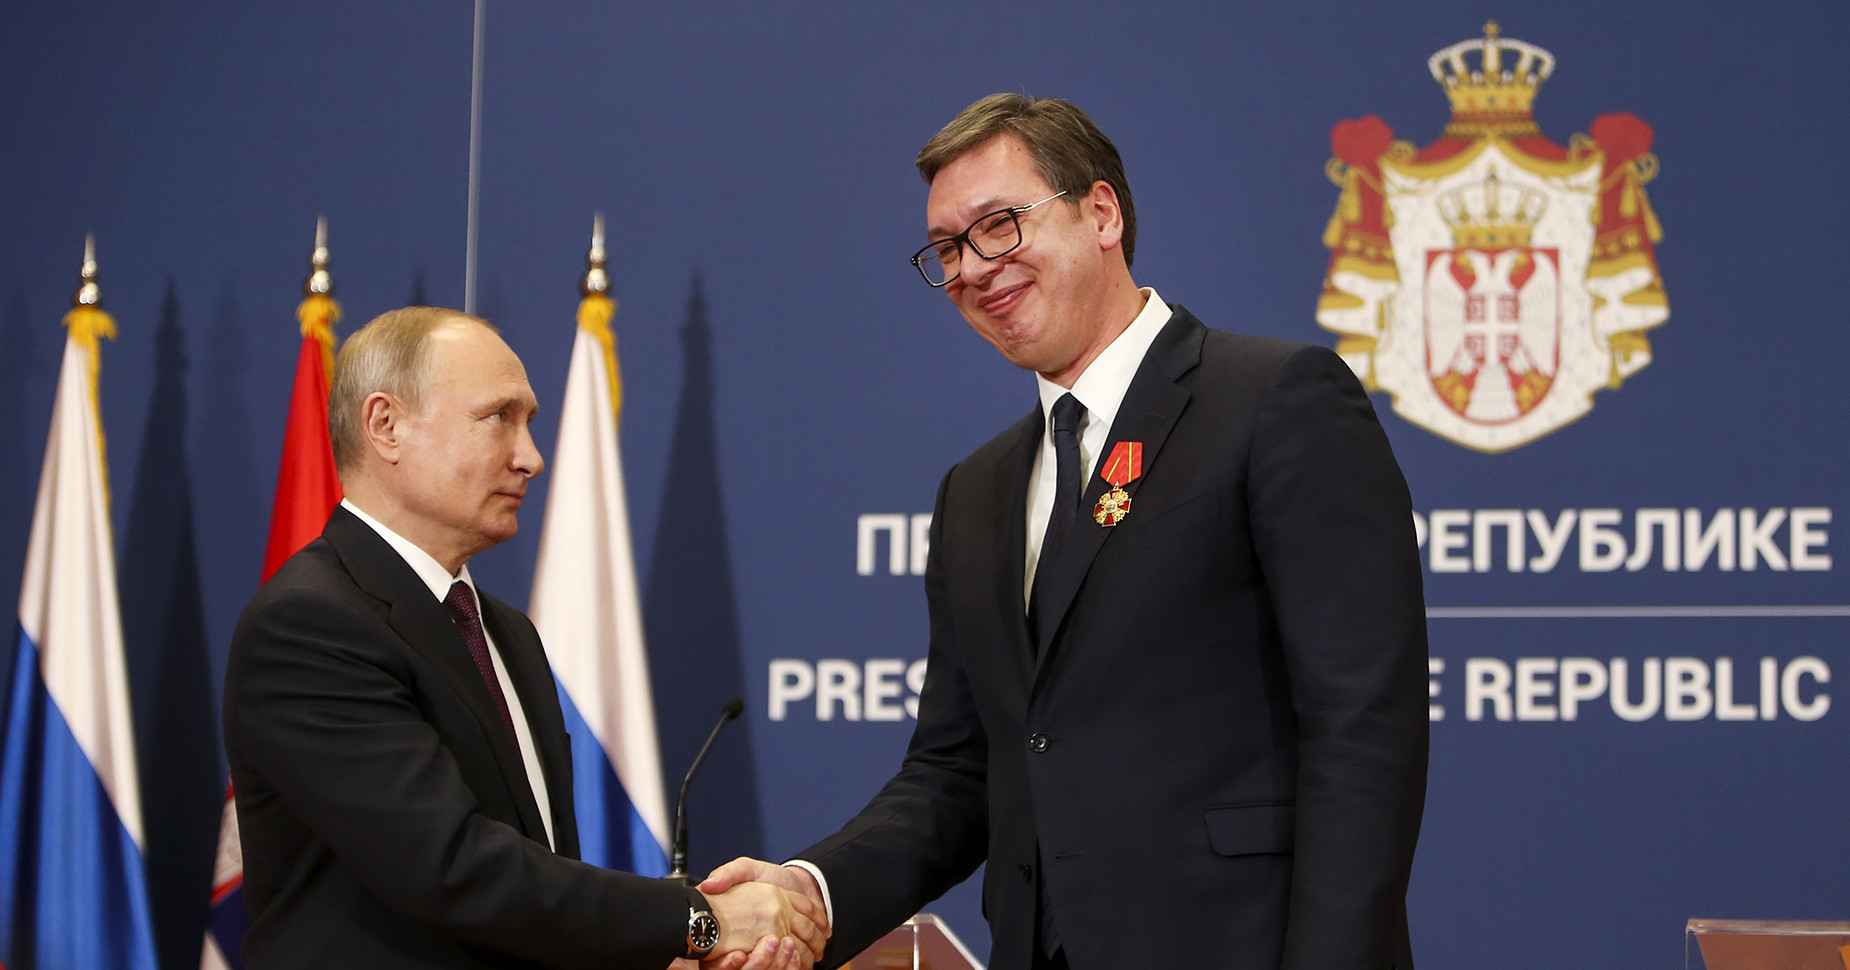 Η Σερβία δεν θα συμμετάσχει στις κυρώσεις κατά της Ρωσίας